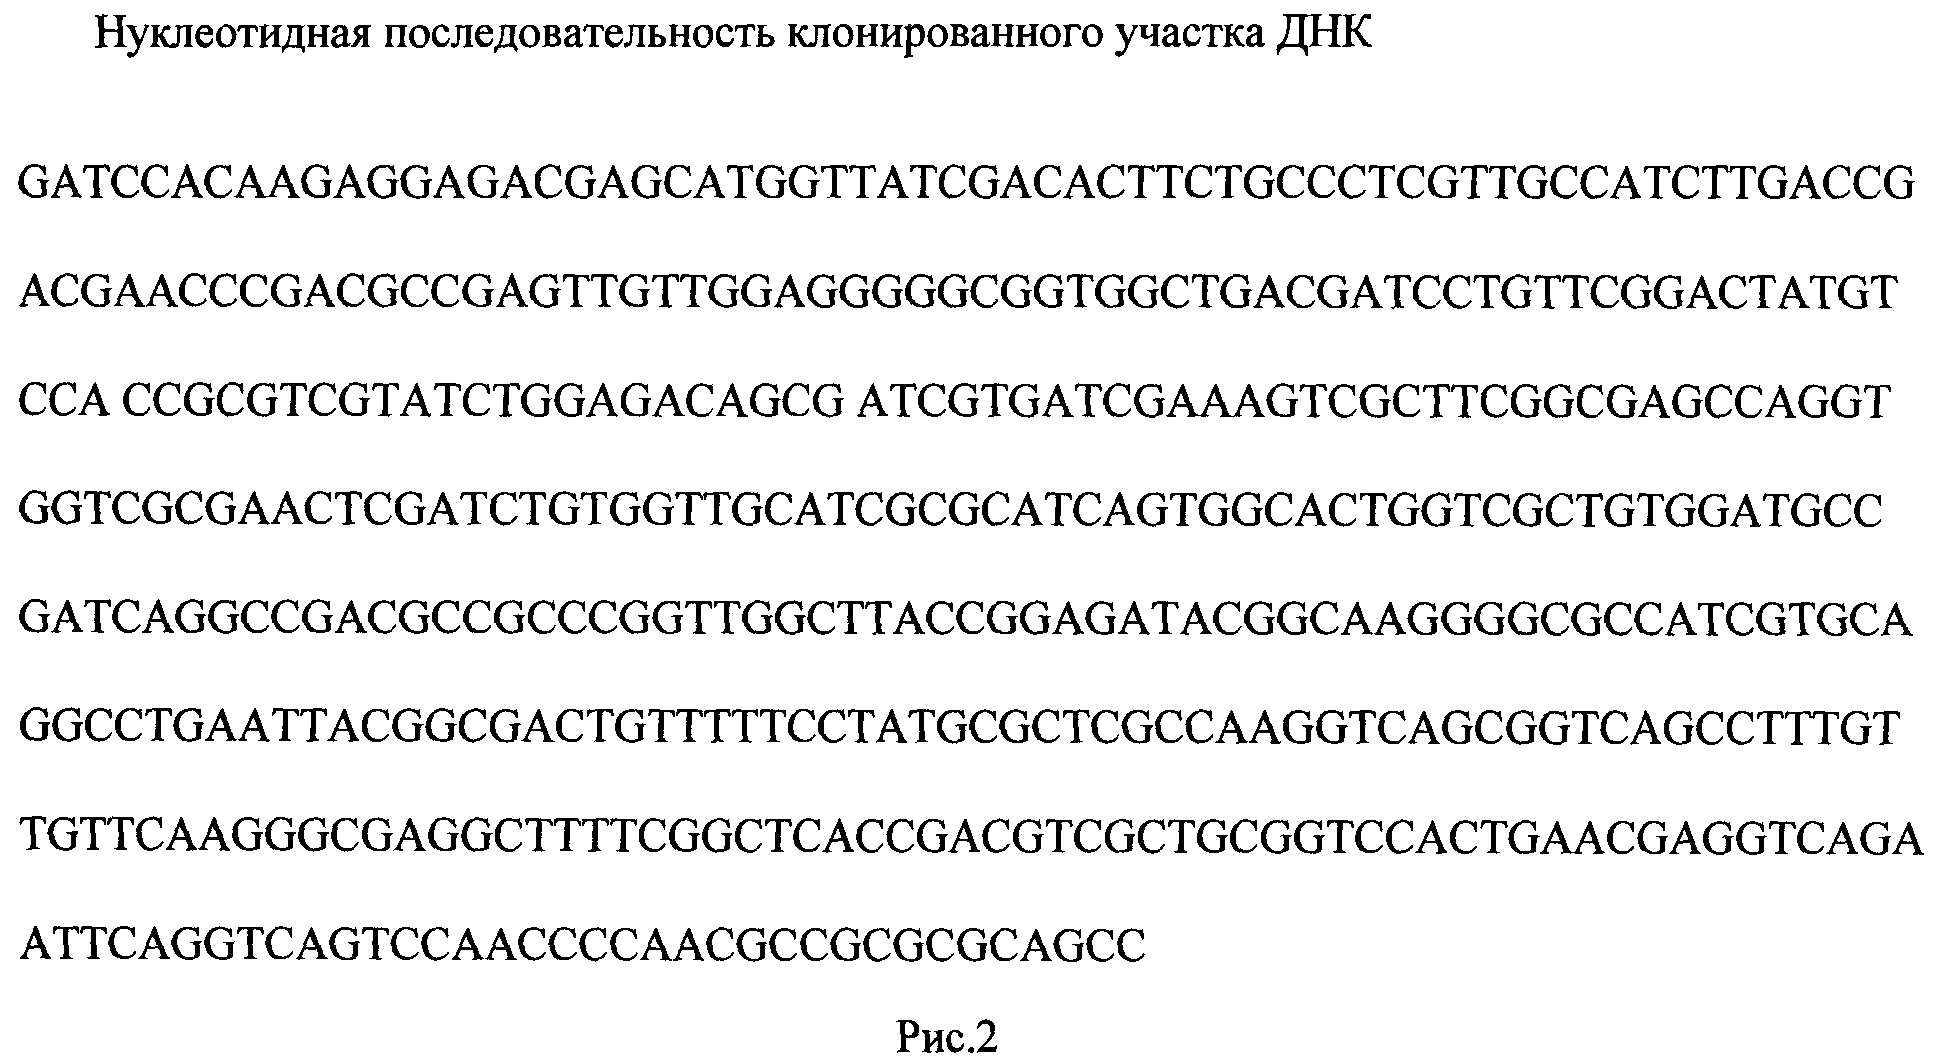 РЕКОМБИНАНТНАЯ ПЛАЗМИДНАЯ ДНК pMind-vapC, СОДЕРЖАЩАЯ НУКЛЕОТИДНУЮ ПОСЛЕДОВАТЕЛЬНОСТЬ, КОДИРУЮЩУЮ ГЕН vapC MSMEG_1284